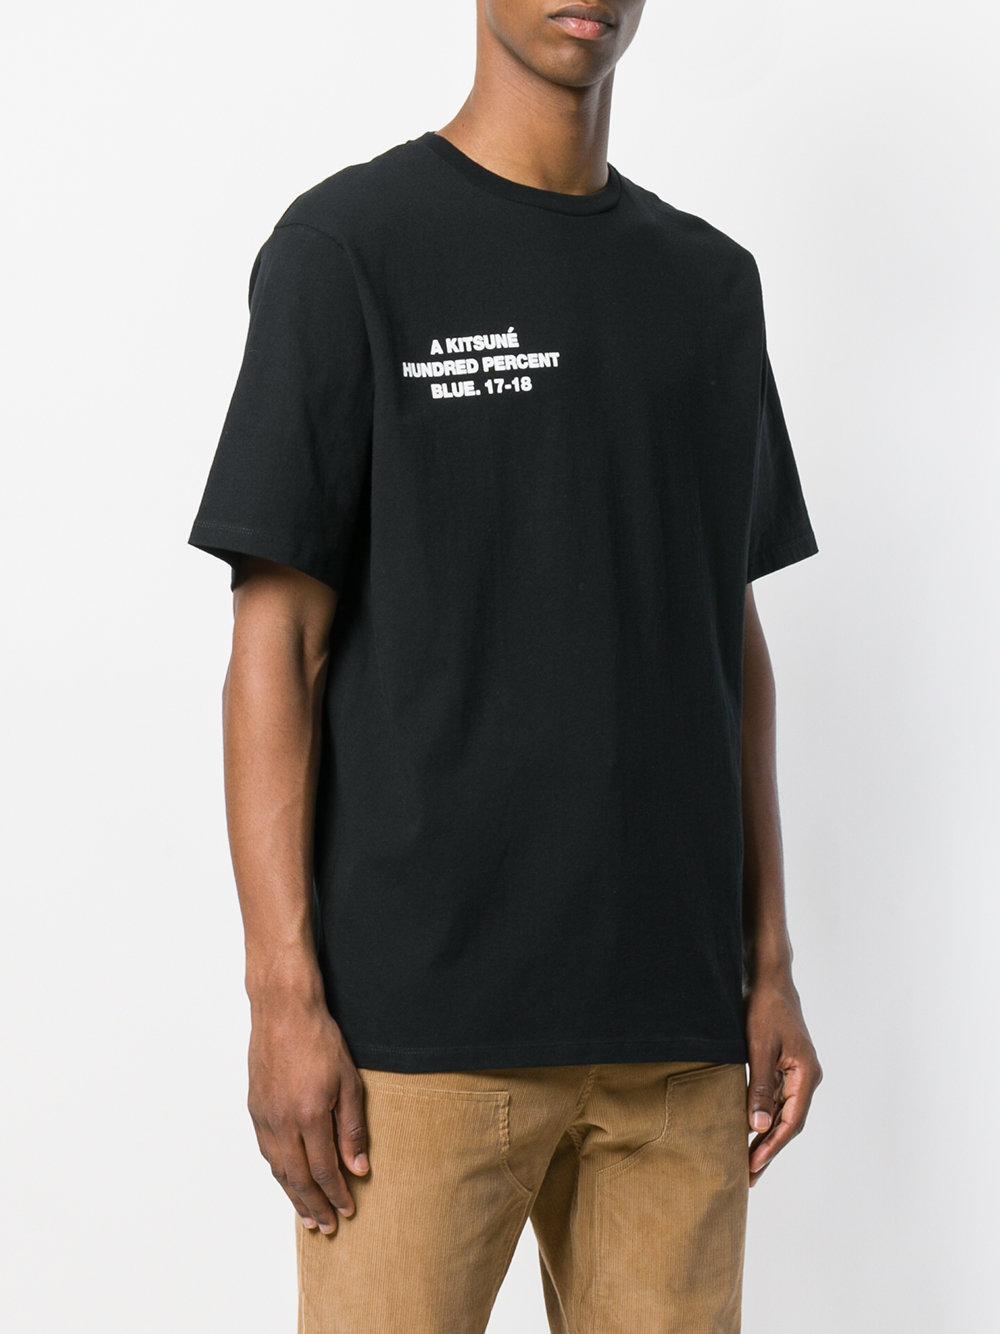 Maison Kitsuné X Ader Error Print T-shirt in Black for Men - Lyst